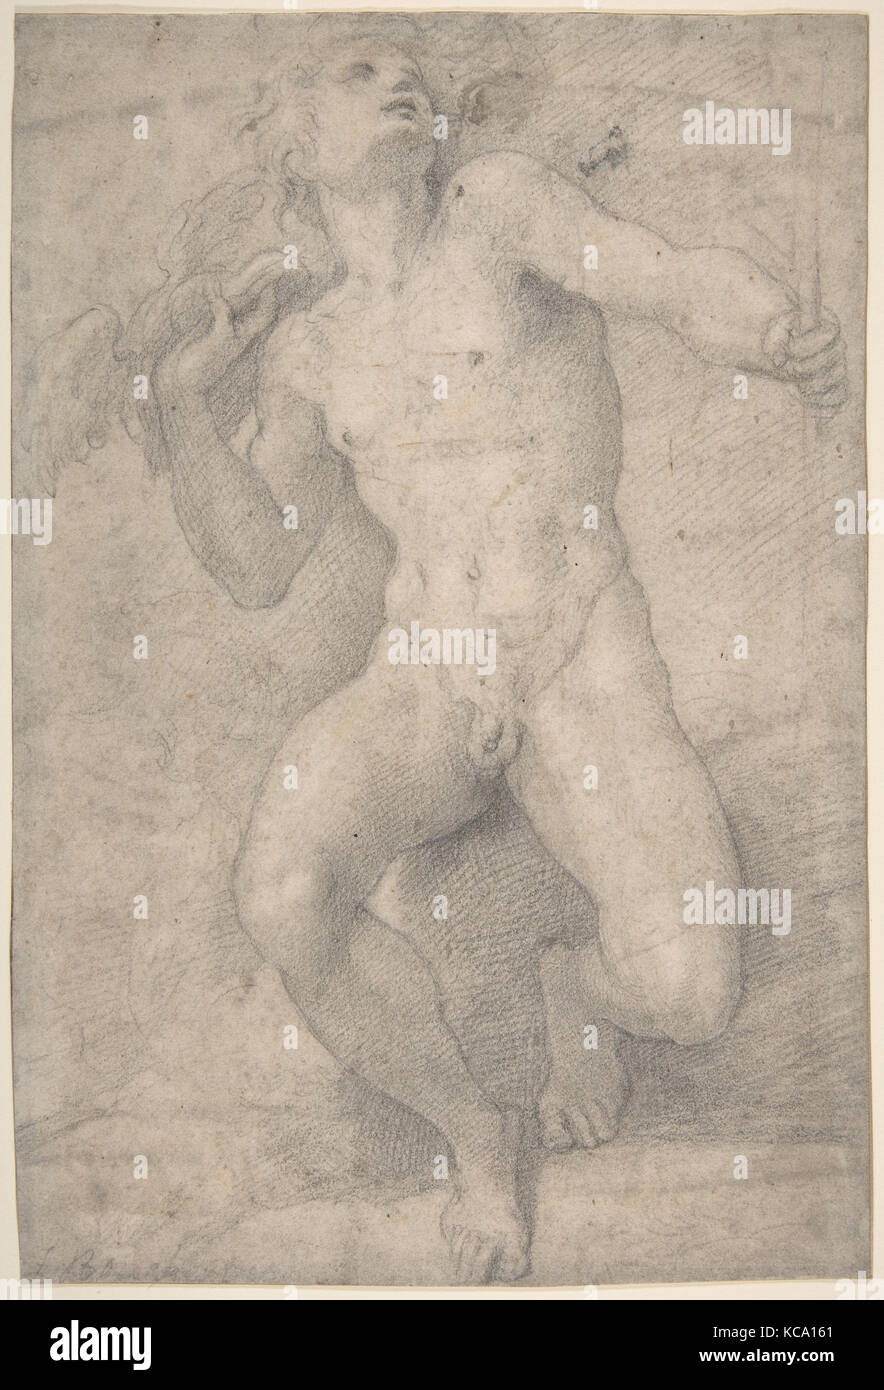 Personnage assis de mercure, 1503-40, craie noire, 12 x 8 1/8 in. (30,5 x 20,6cm), dessins, Parmigianino (Girolamo Francesco Maria Banque D'Images